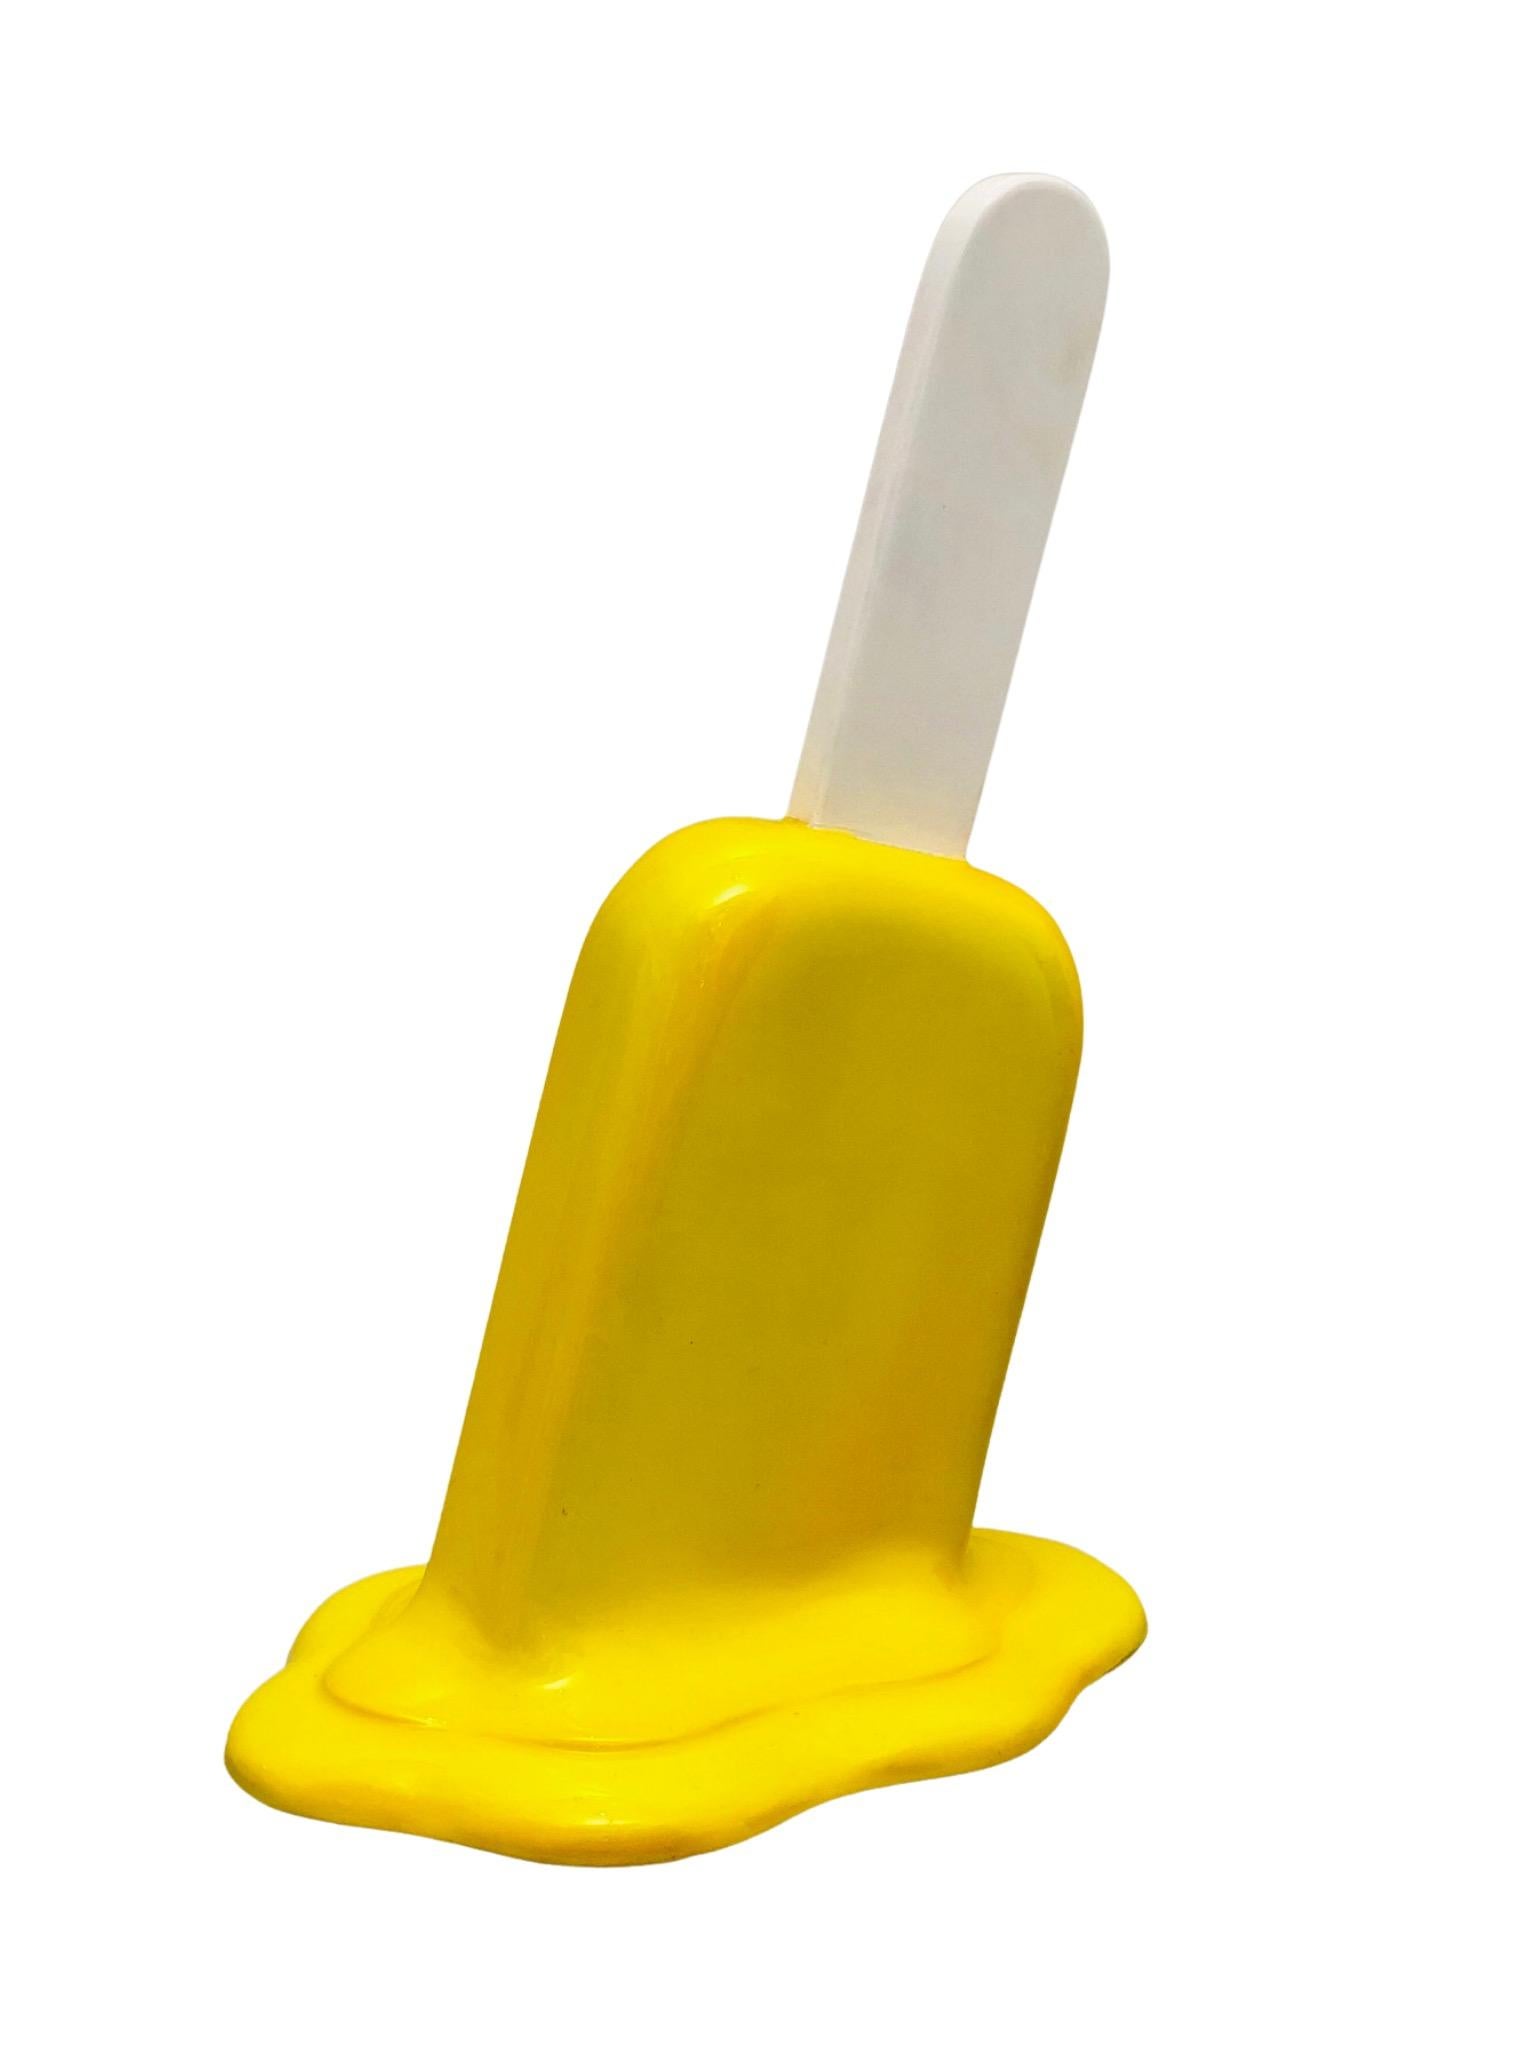 Yellow Small Popsicle - Sculpture by Elena Bulatova